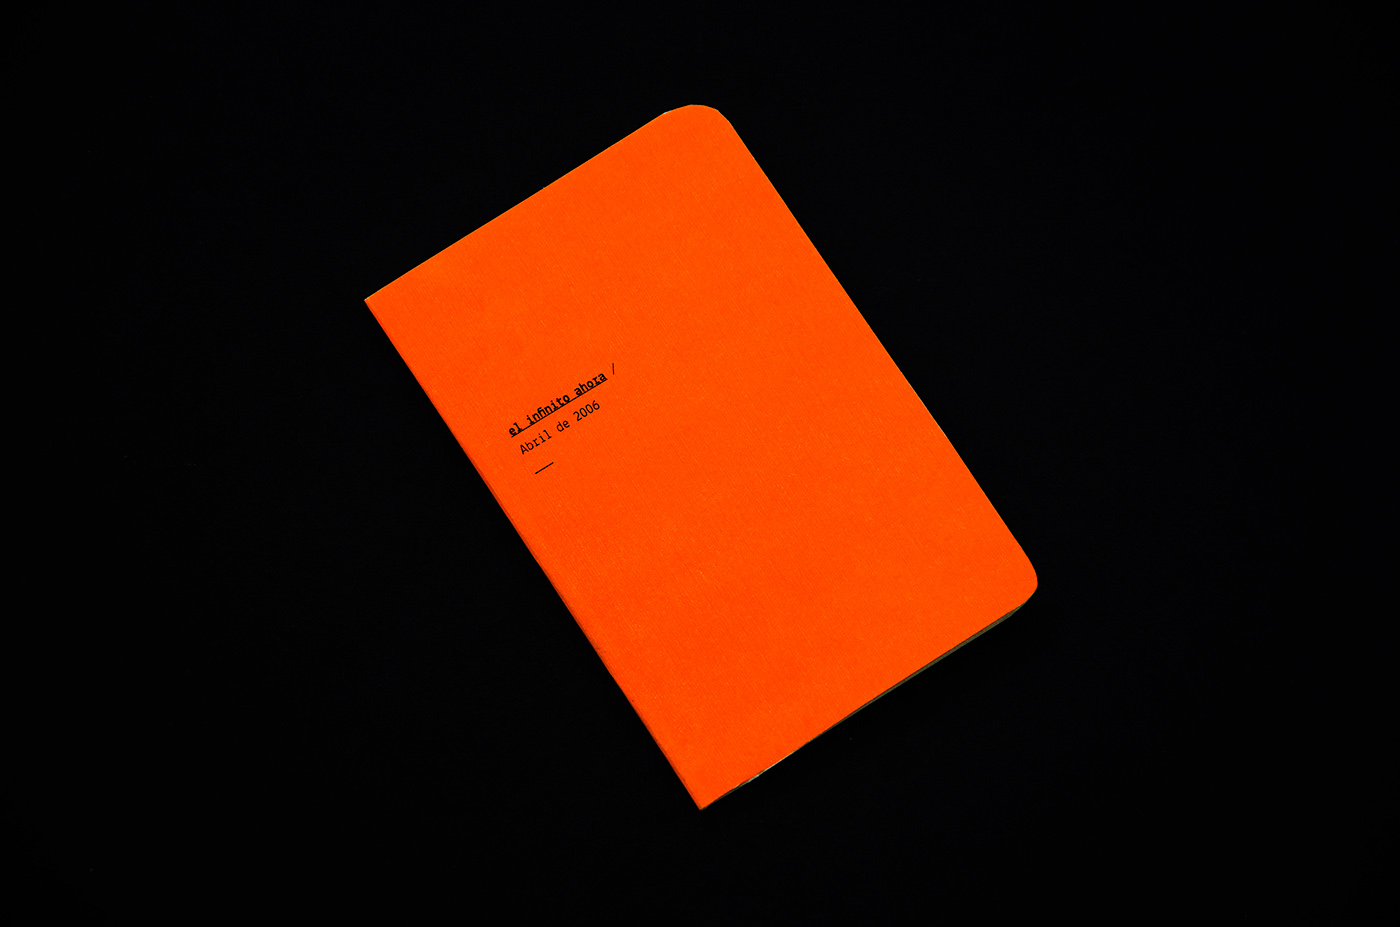 Diseño editorial editorial fluo typo experimental grid conceptual diseño orange Script Poetry  presentation Periodismo reality concept